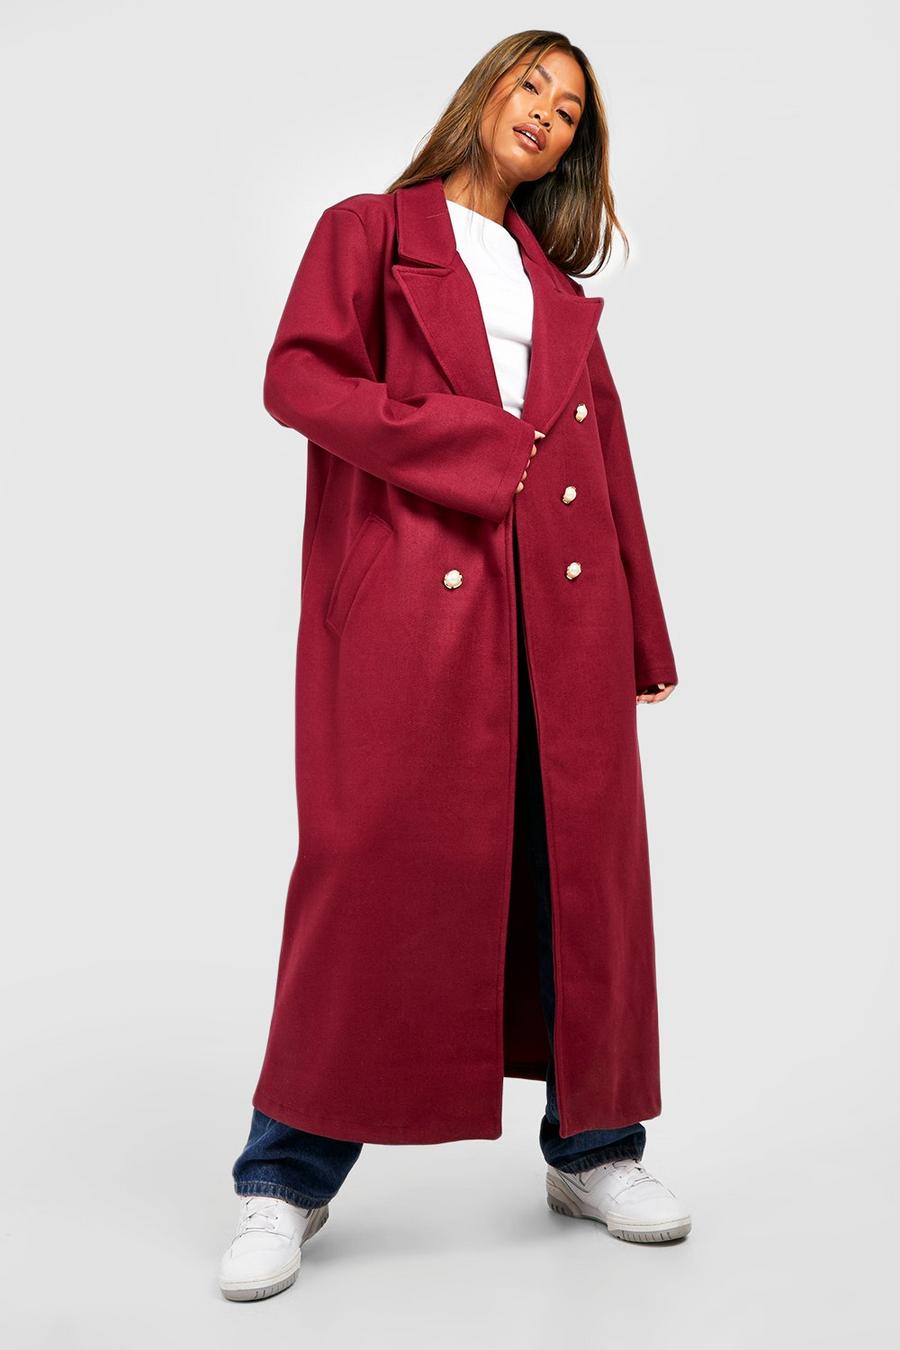 Zweireihiger Mantel mit Perlen-Knöpfen, Burgundy rouge